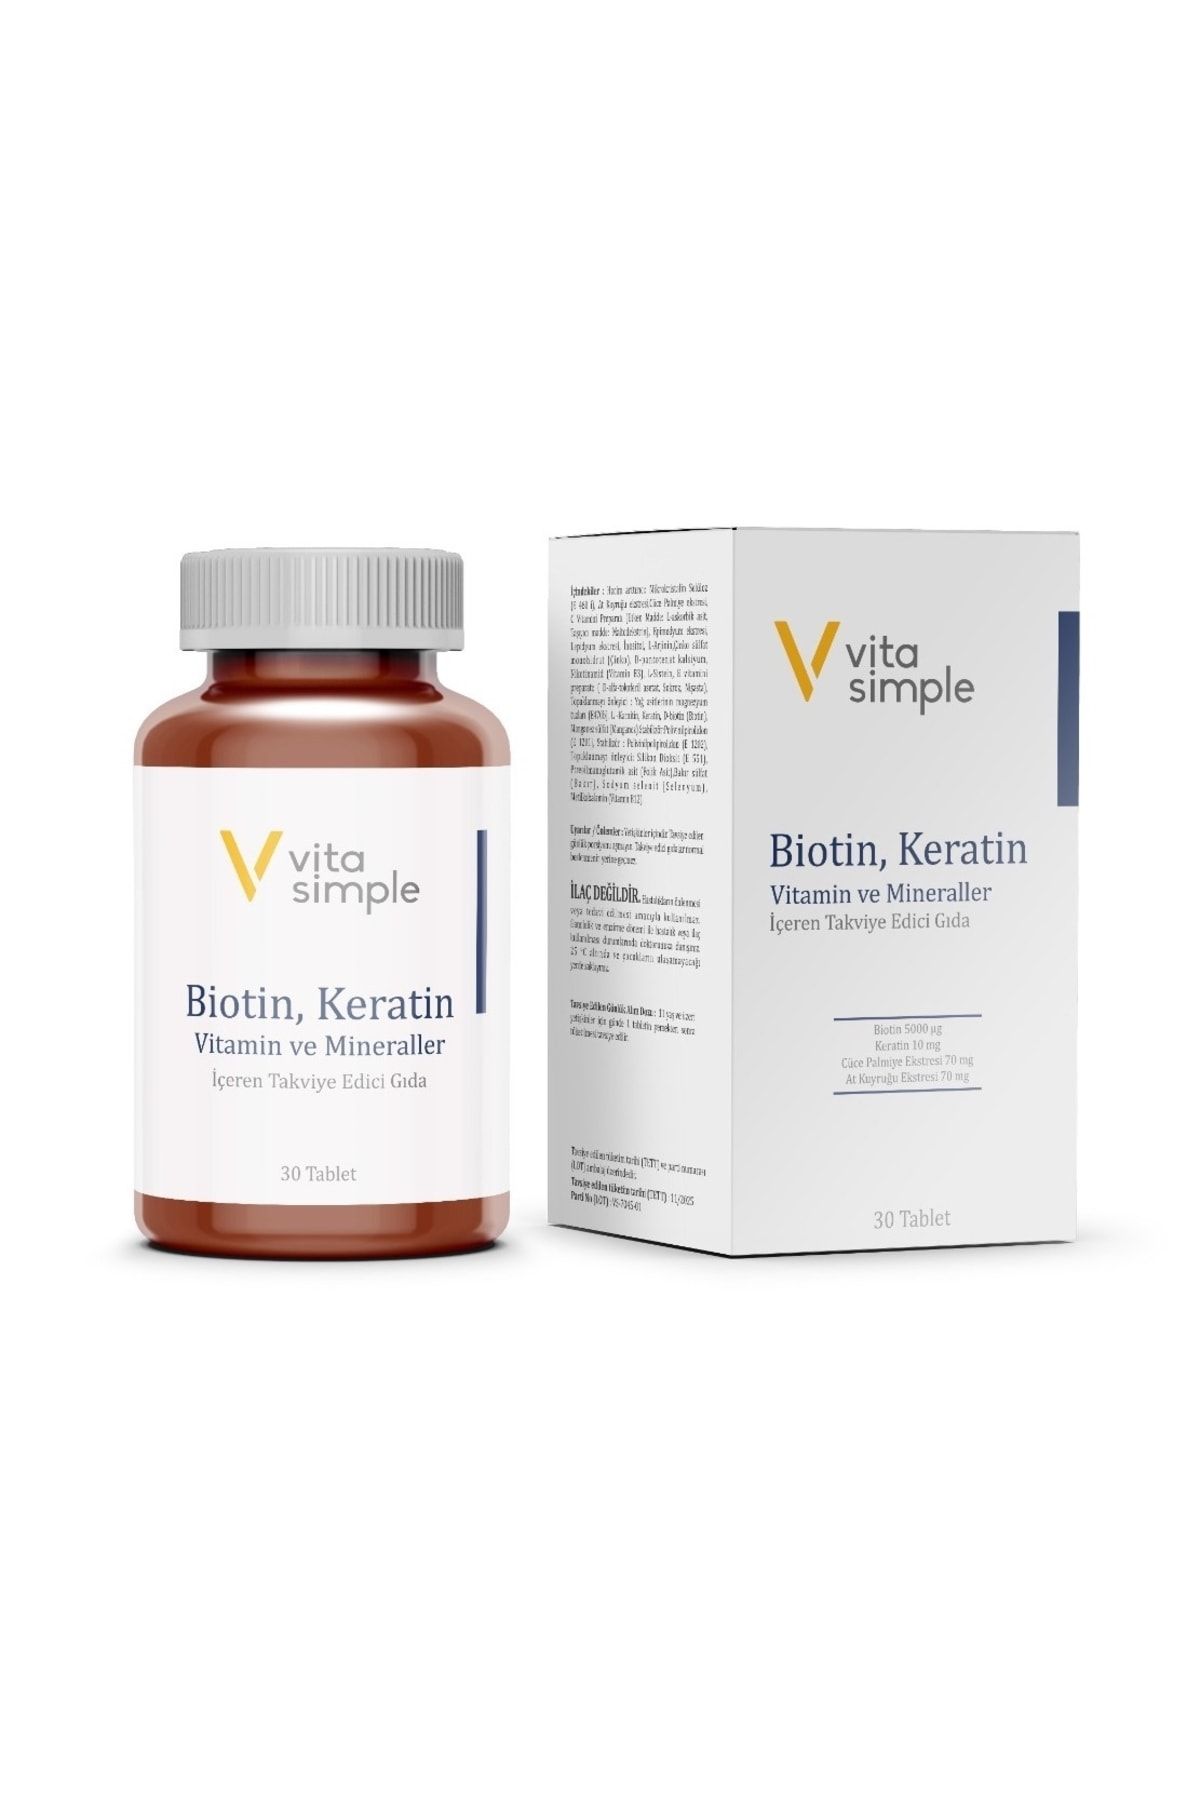 VitaSimple Biotin, Keratin, Vitamin Ve Mineraller Içeren Takviye Edici Gıda 30 Tablet